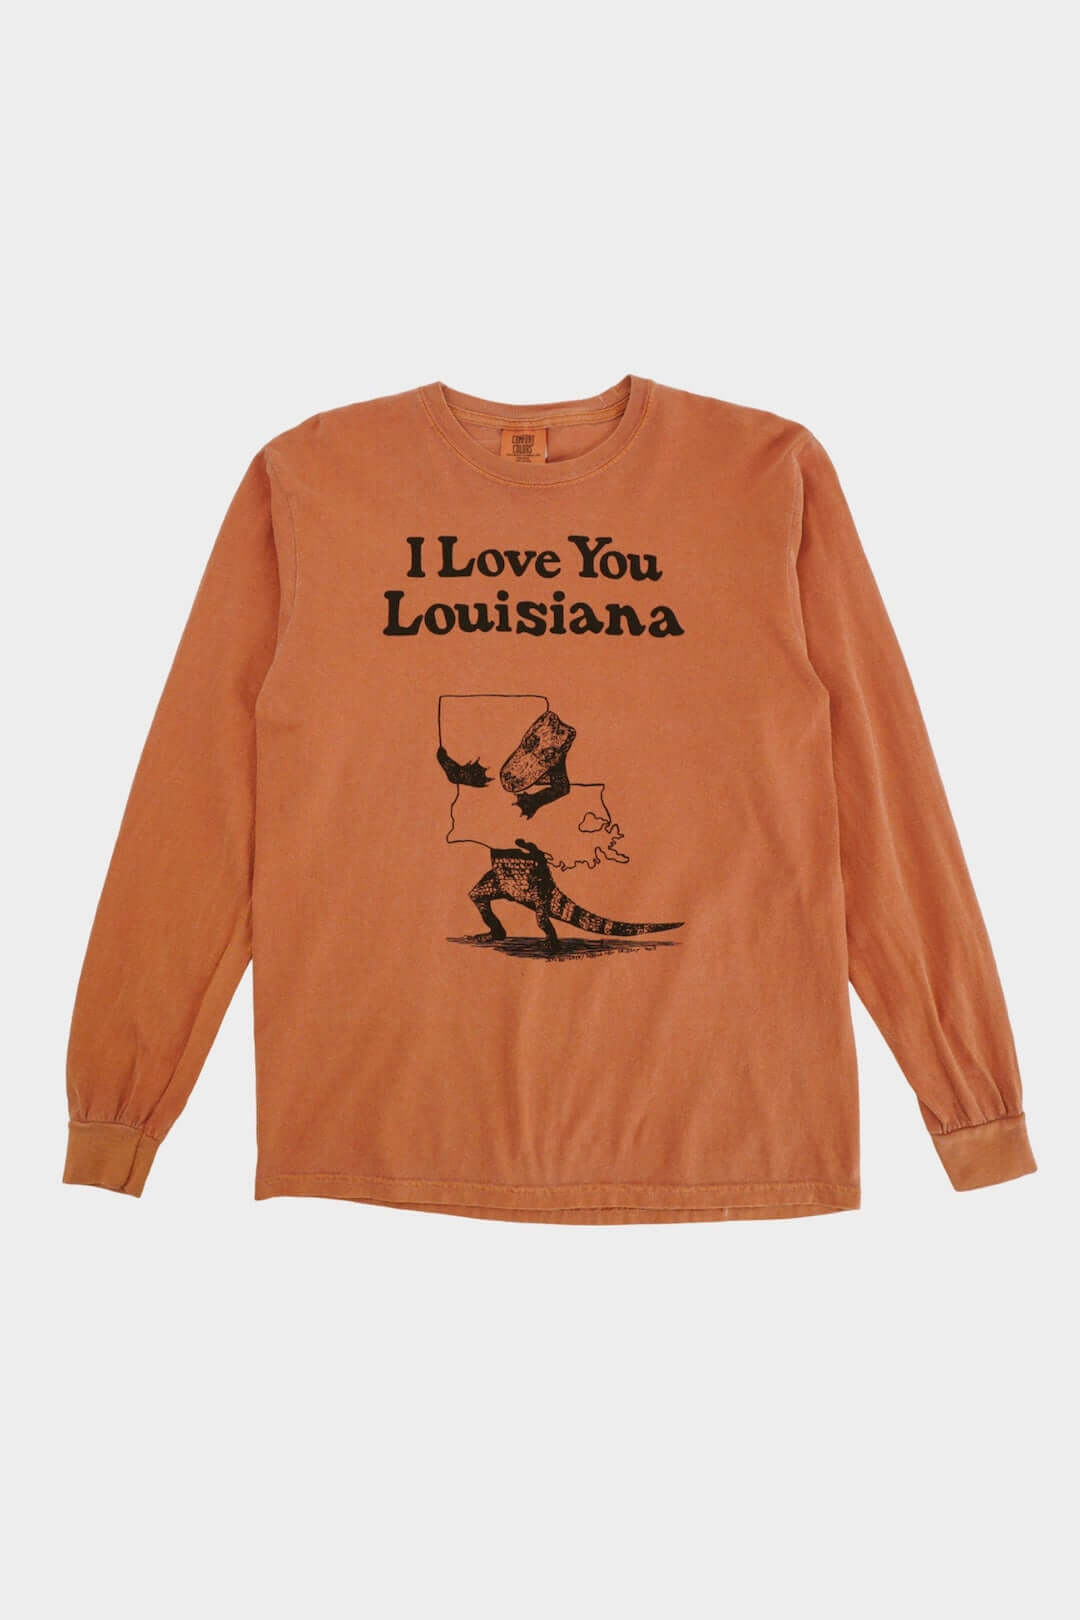 Someone In Alexandria Louisiana Loves Me Heart Skyline Long Sleeve T-Shirt